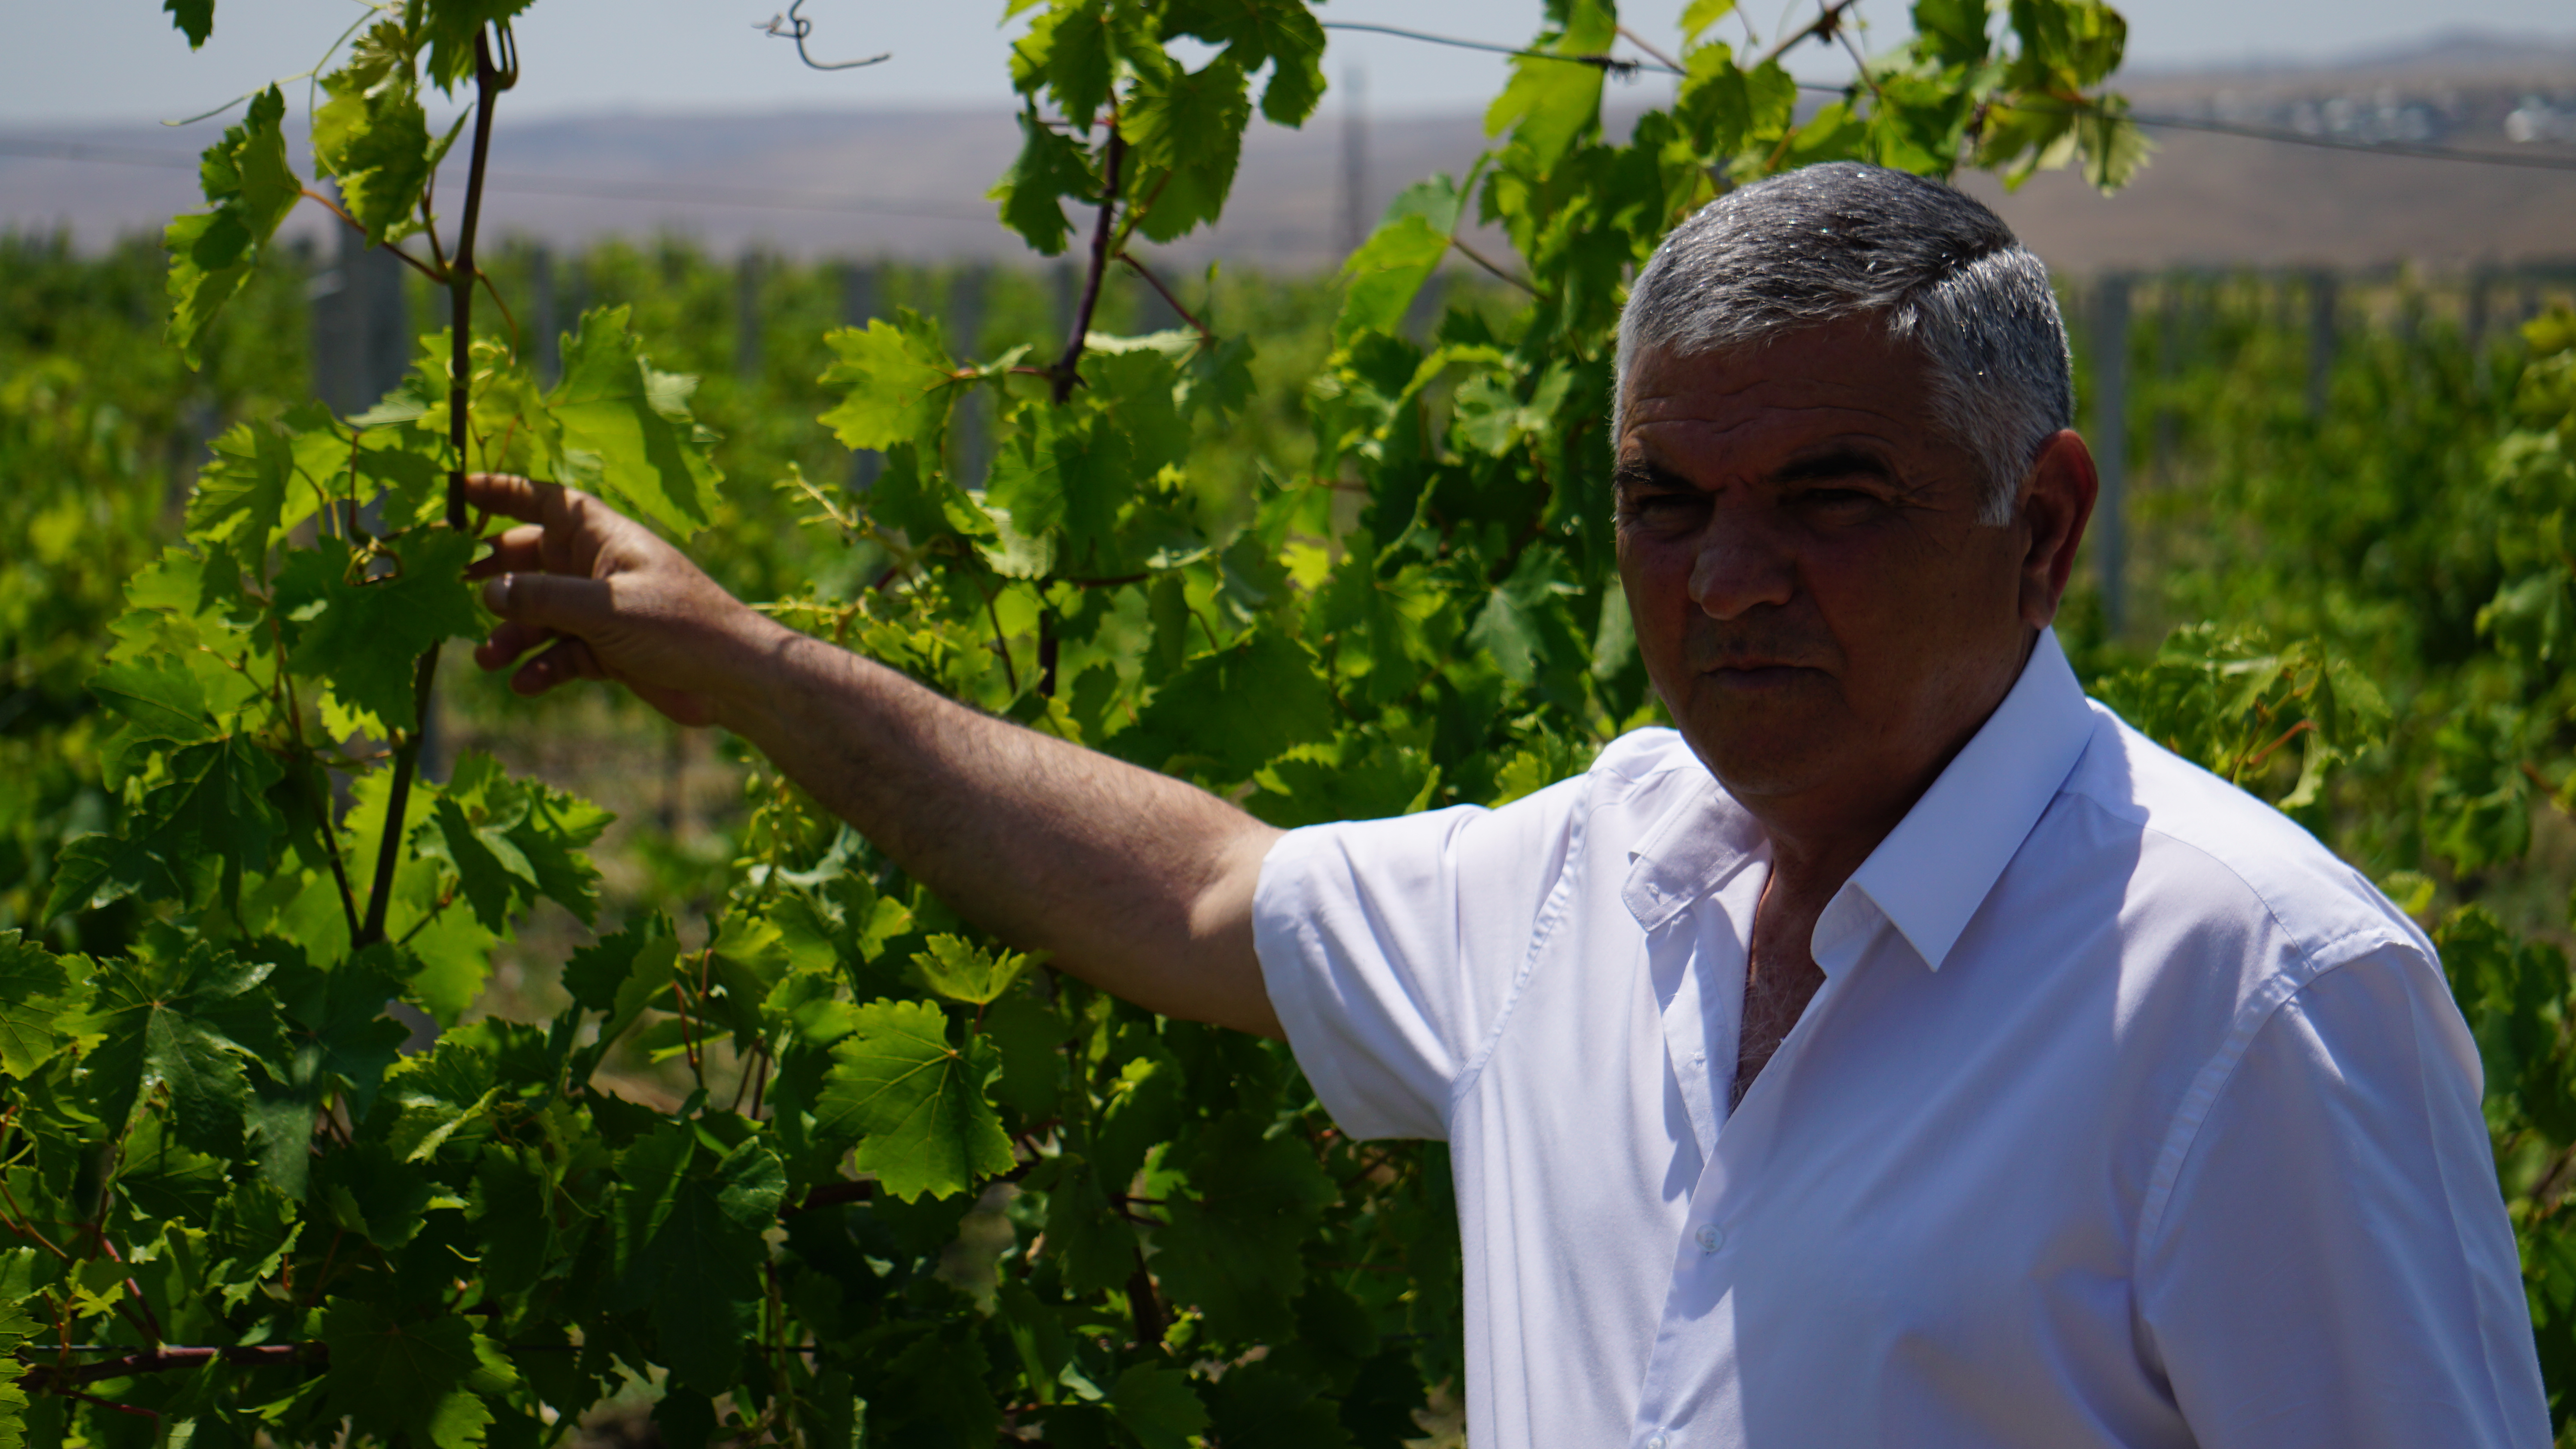 Агроном Ахмедалы Ахмедов считает, что закупочные цены  на виноград должны регулироваться государством. Шамахы, Азербайджан. Фото Ислам Шыхали